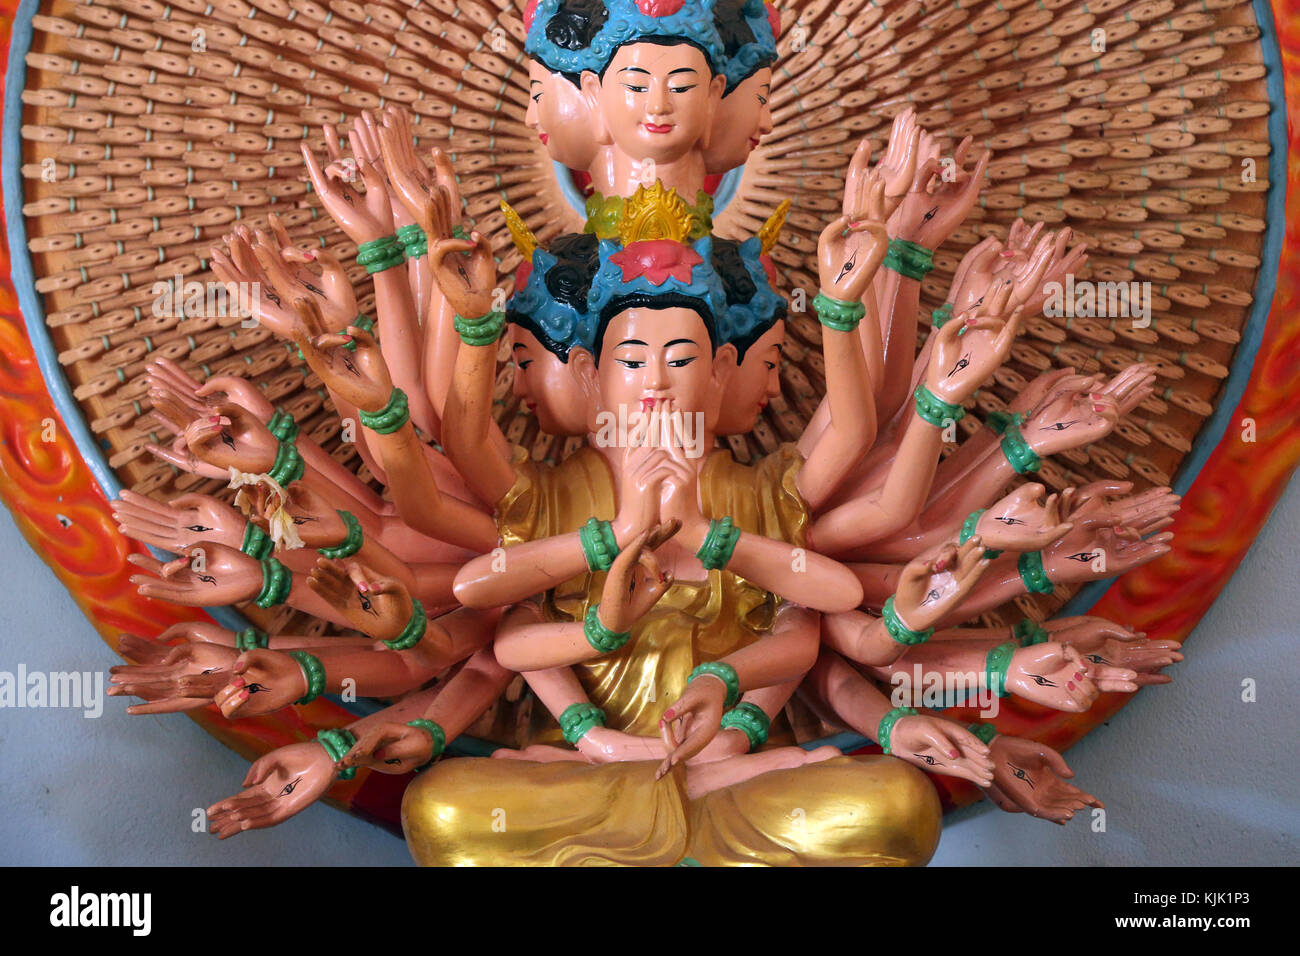 Van Hanh zen-buddhistischen Kloster. Tausend bewaffneten Avalokitesvara, der Bodhisattva des Mitgefühls. Statue. Dalat. Vietnam. Stockfoto